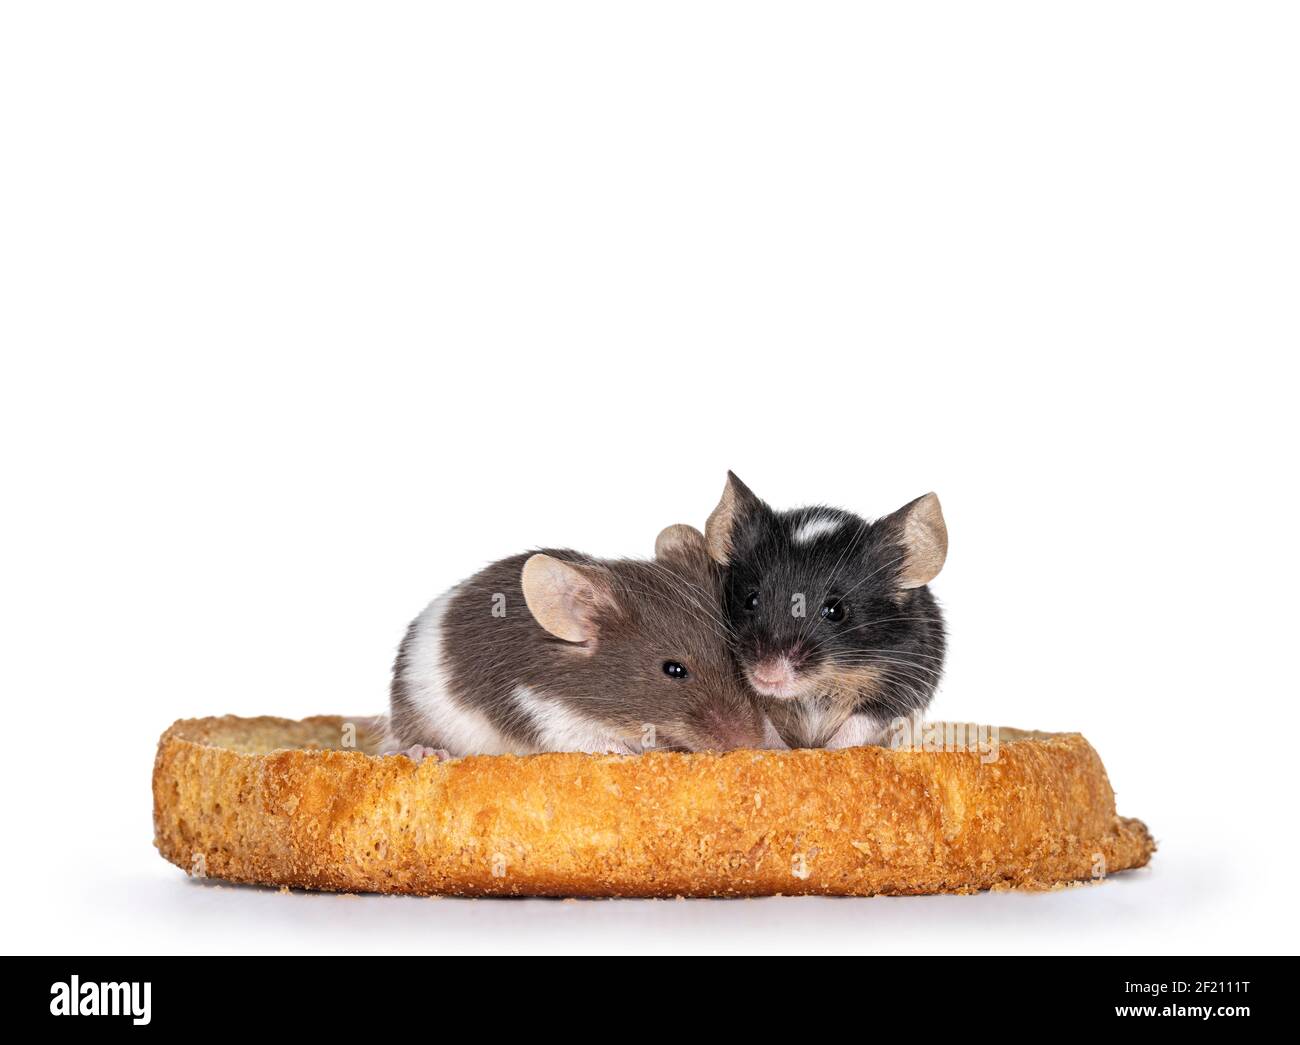 Schwarz mit weiß und braun mit weißen Baby-Mäusen, die auf einem Stück Toast sitzen. Blick auf die Kamera. Isoliert auf weißem Hintergrund. Stockfoto